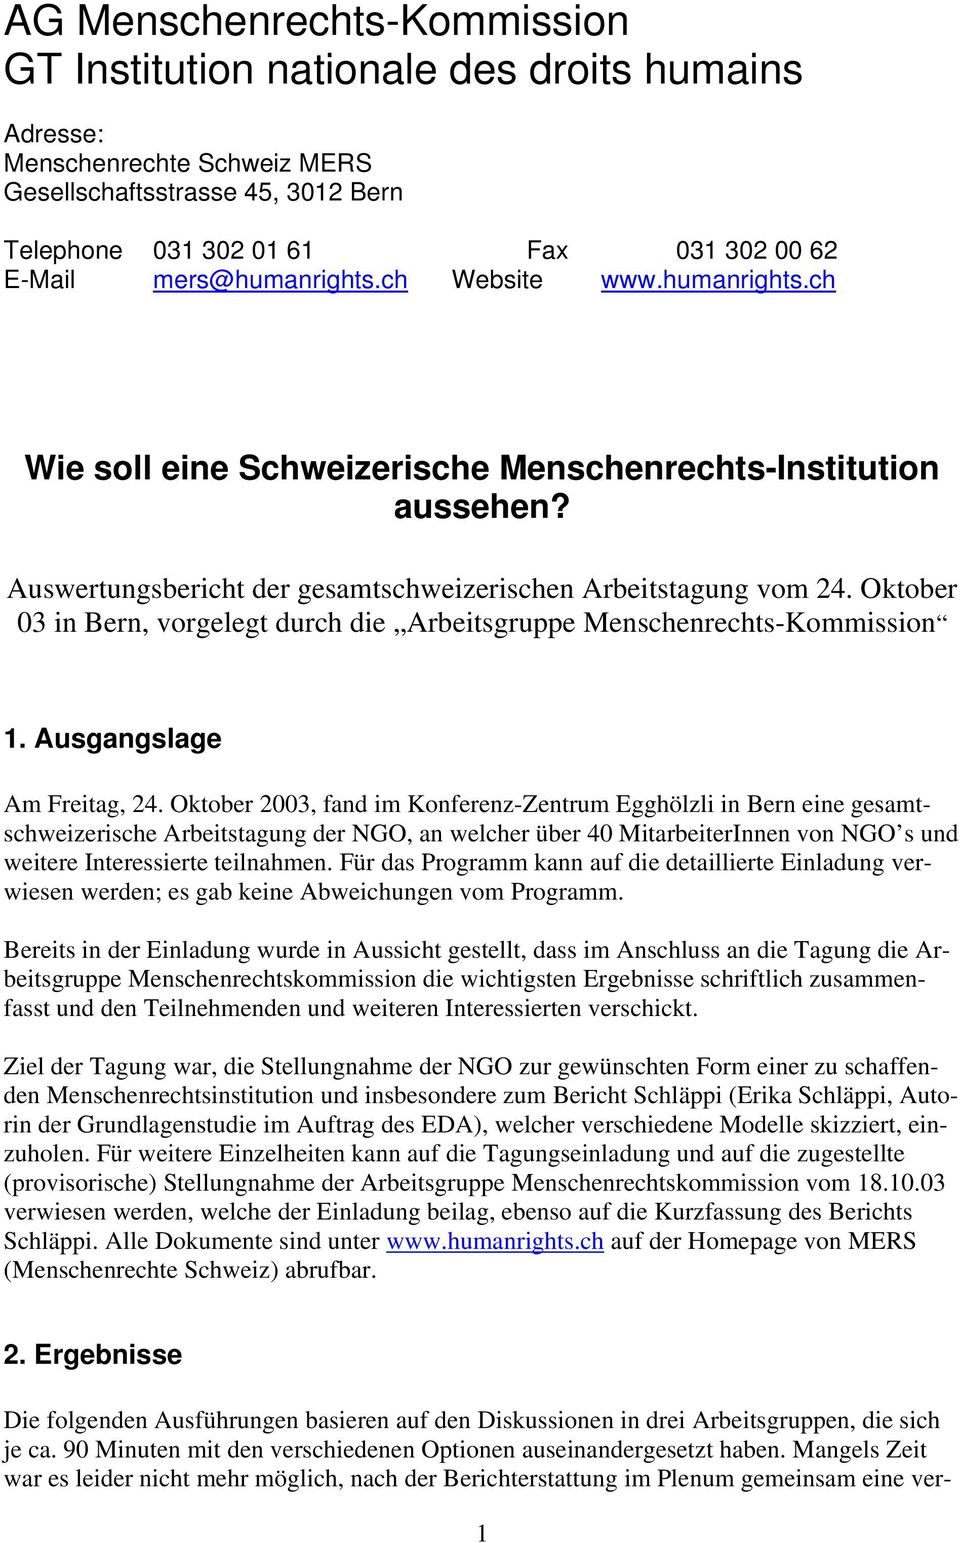 Oktober 03 in Bern, vorgelegt durch die Arbeitsgruppe Menschenrechts-Kommission 1. Ausgangslage Am Freitag, 24.